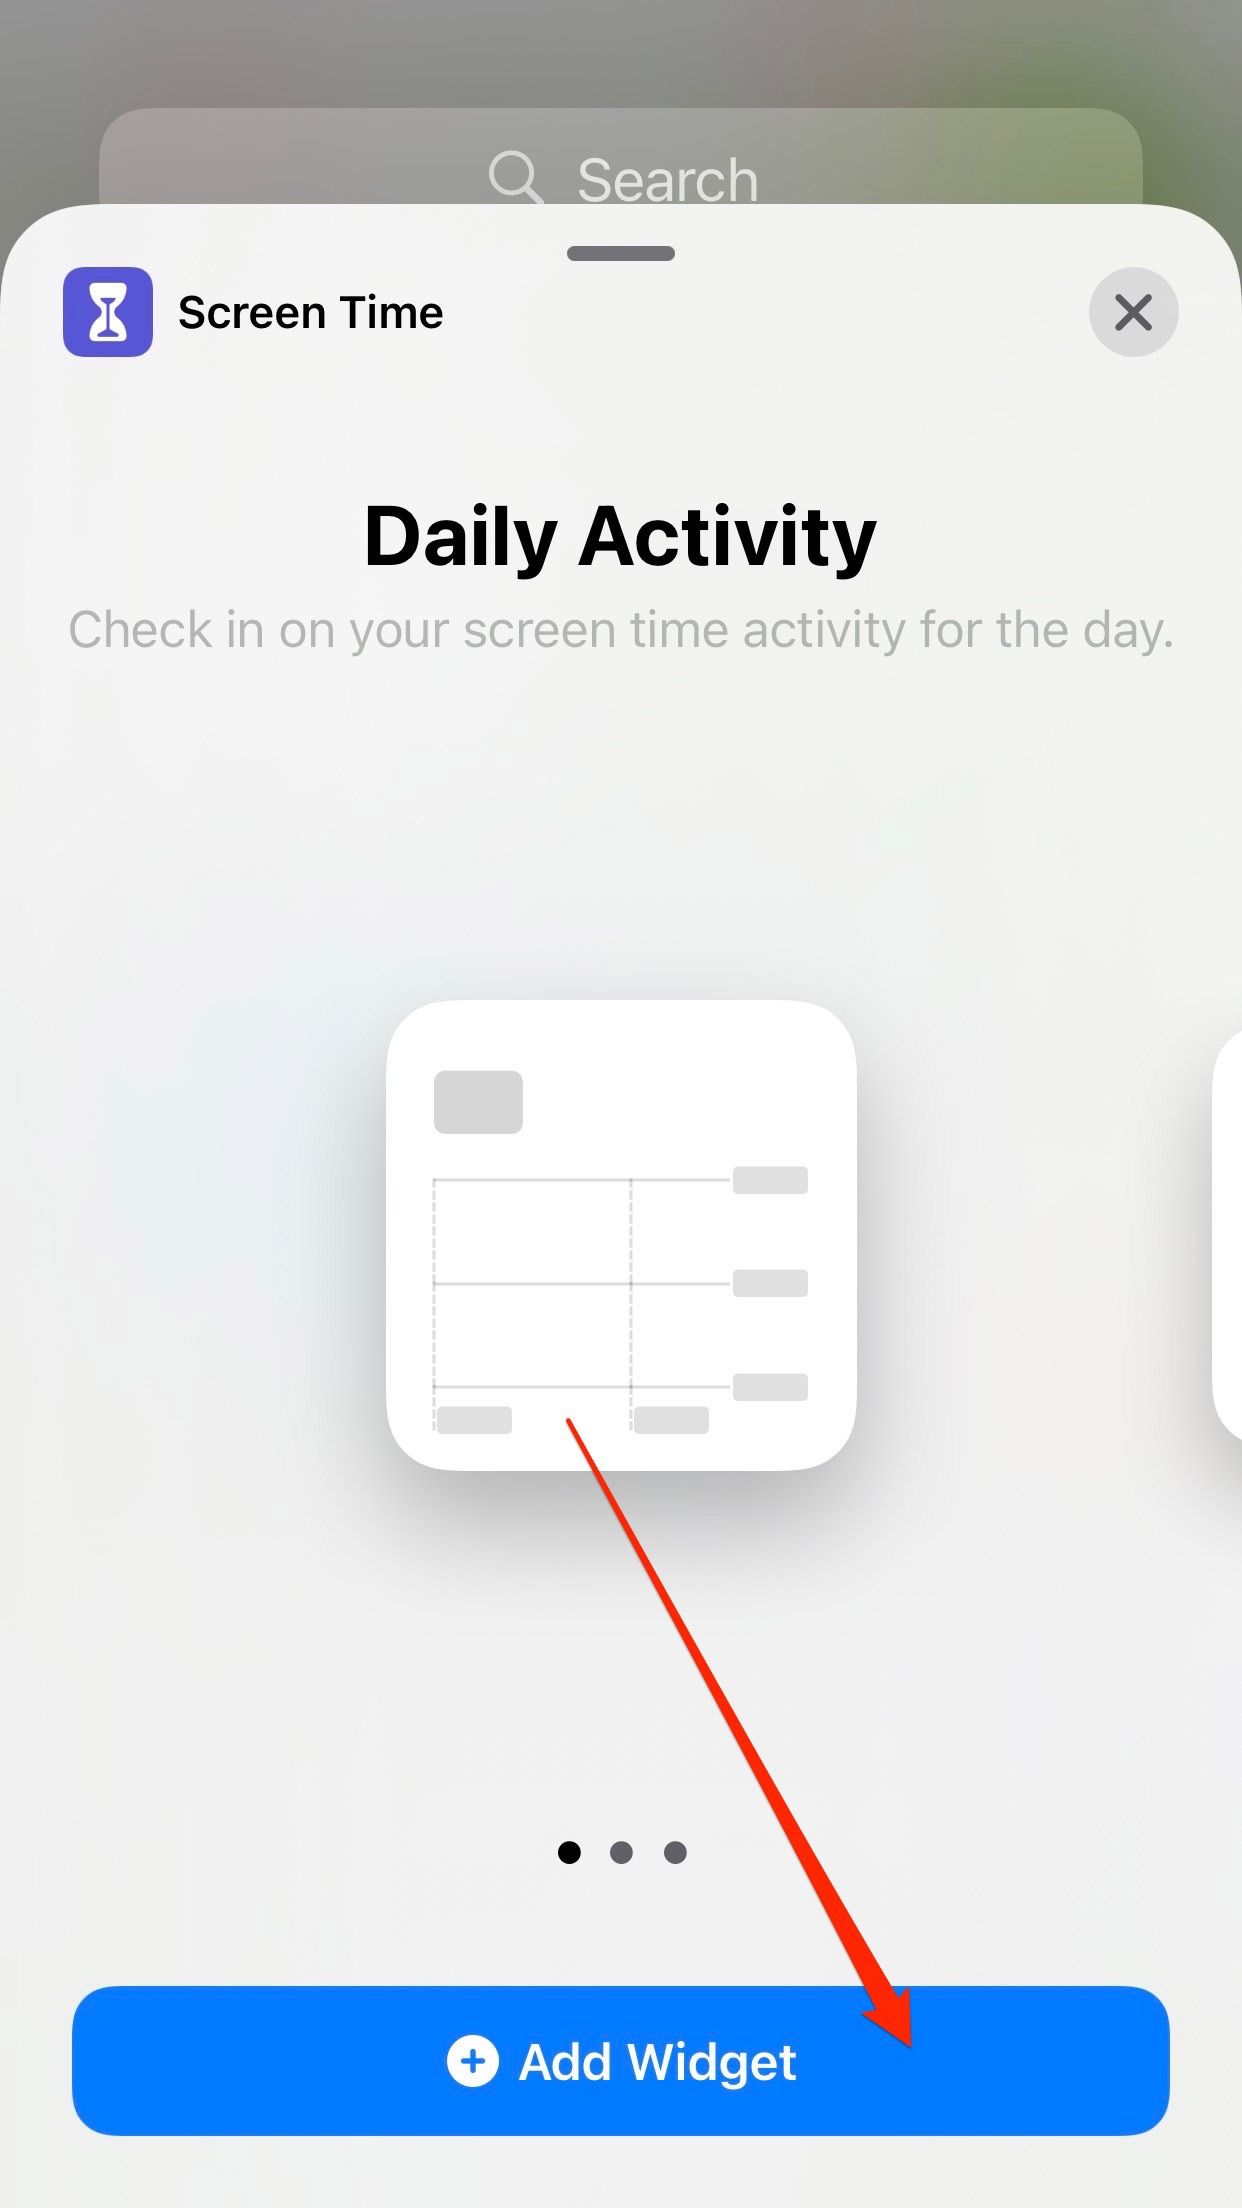 Captura de pantalla que muestra la opción de volver a agregar un widget en el iPhone